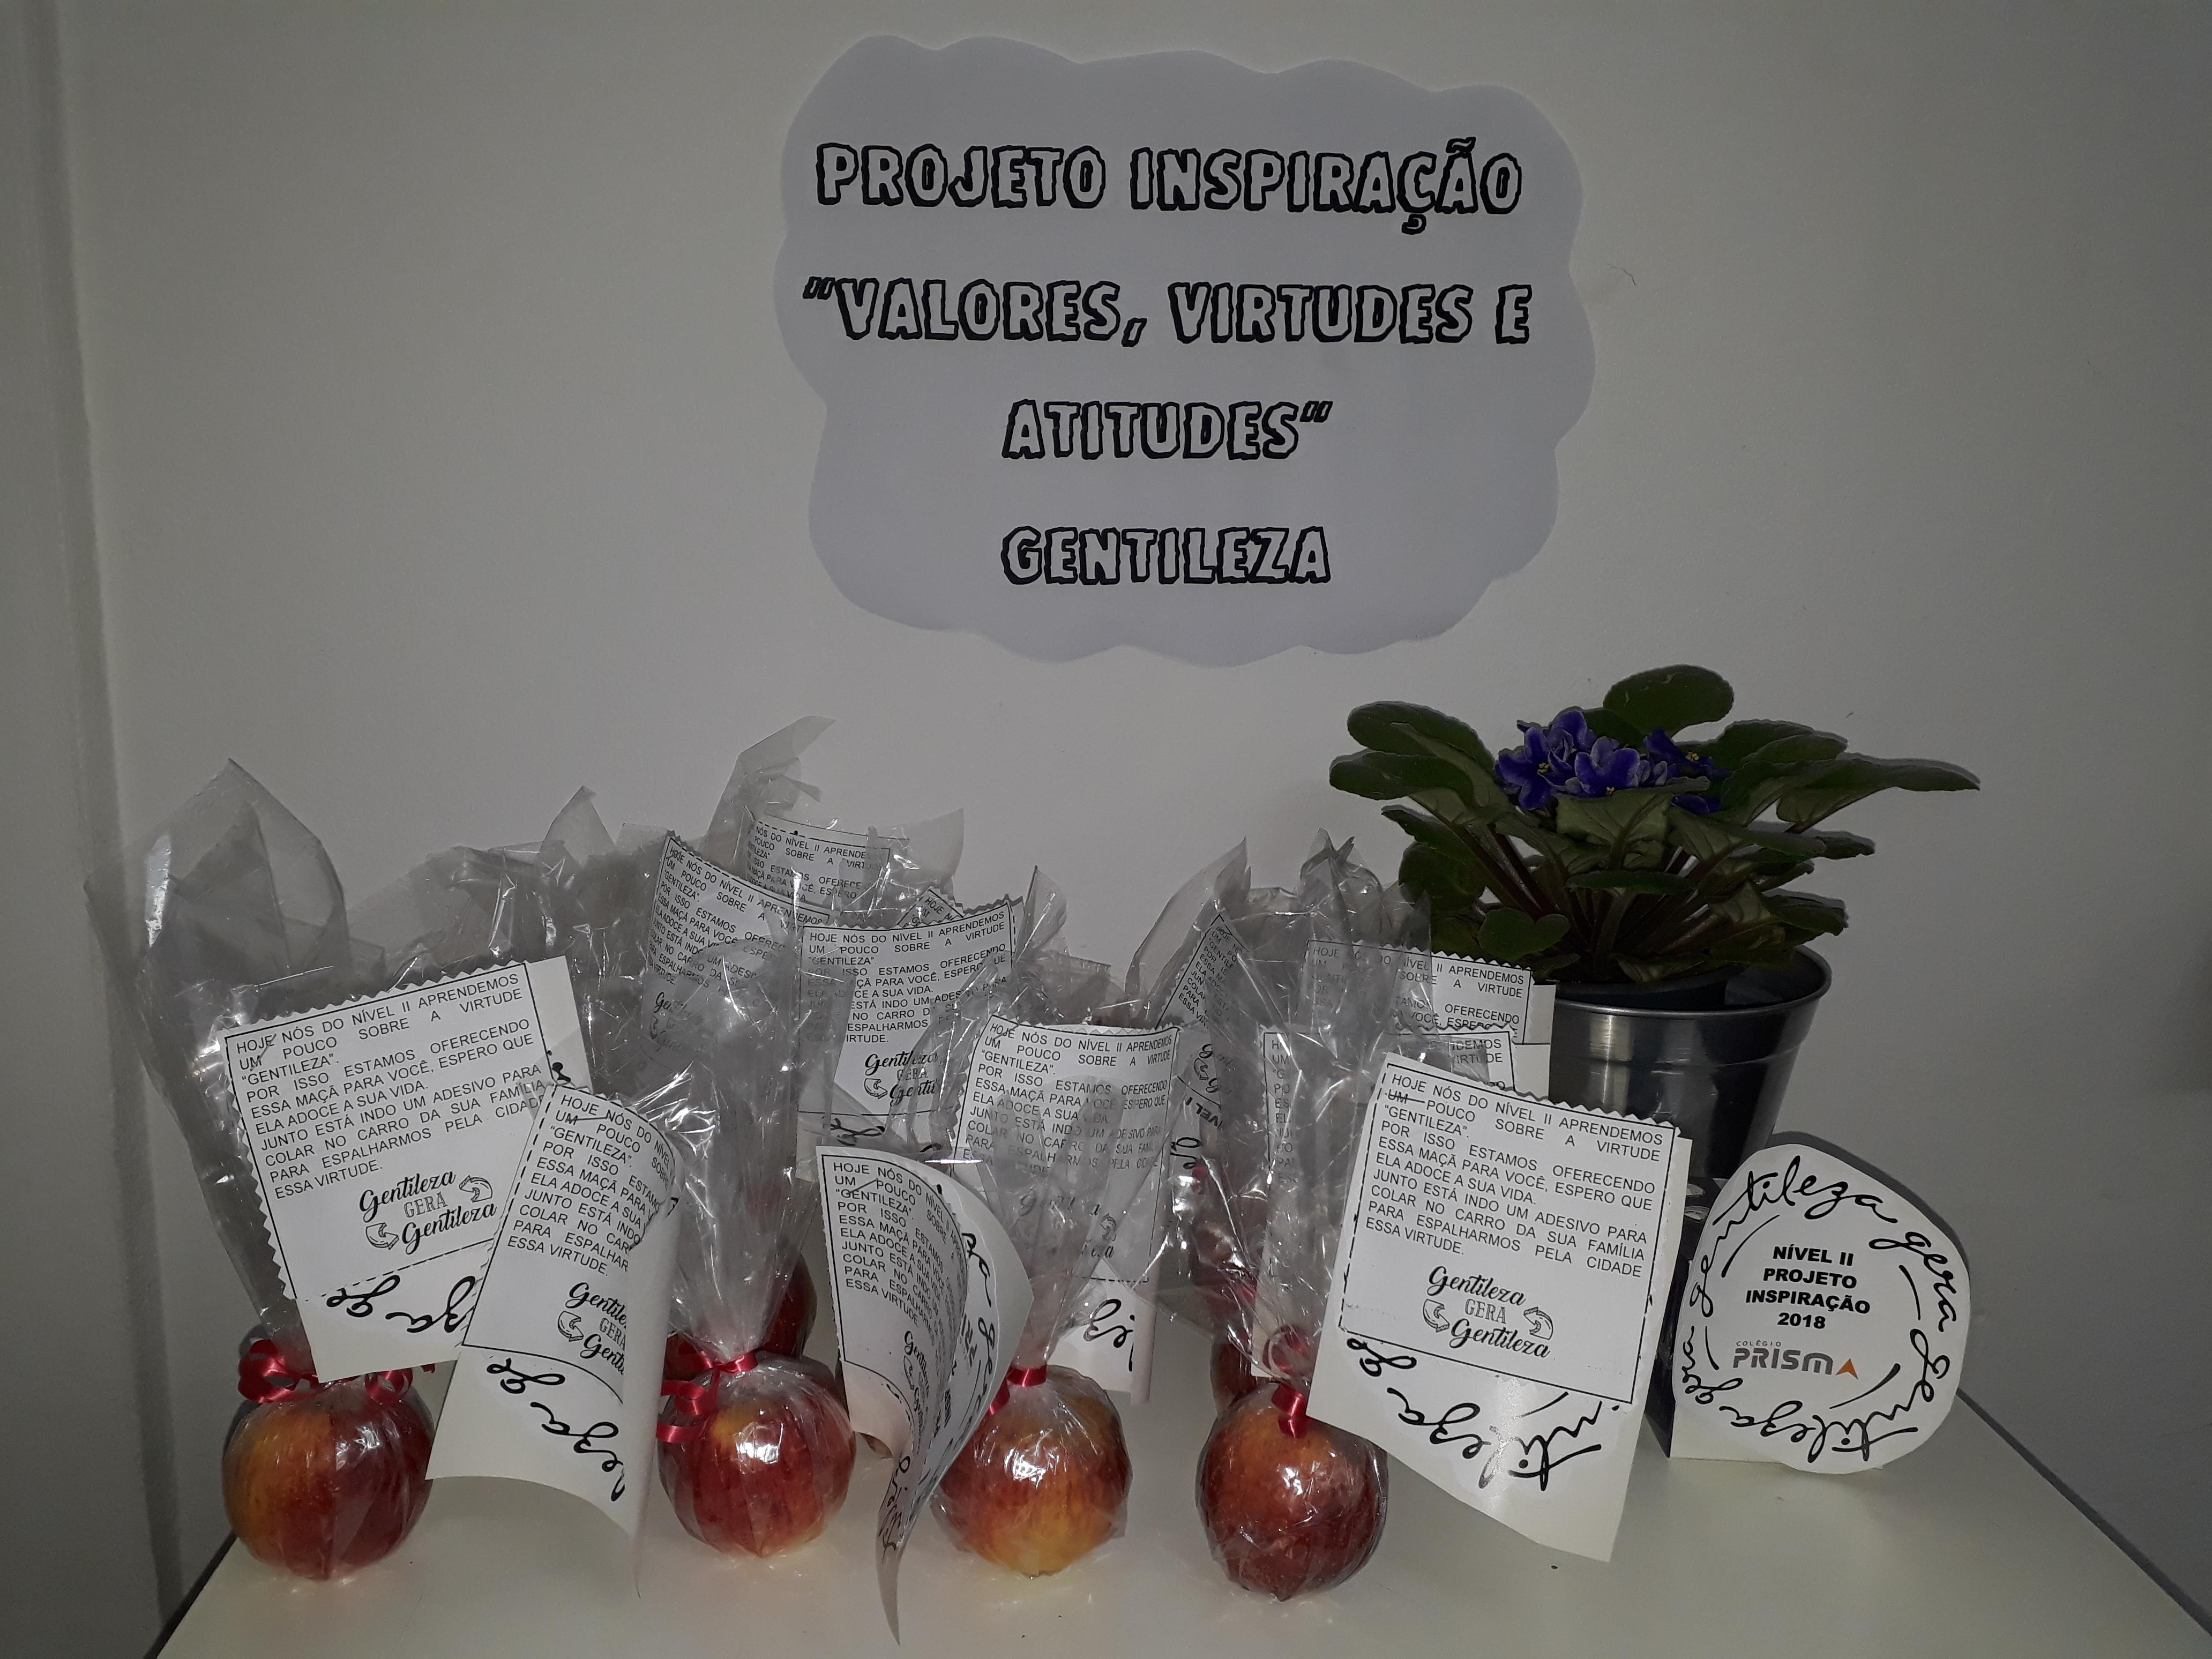 Nível II distribuiu maçãs e adesivos de gentileza para os alunos do 9º ano e para os funcionários.